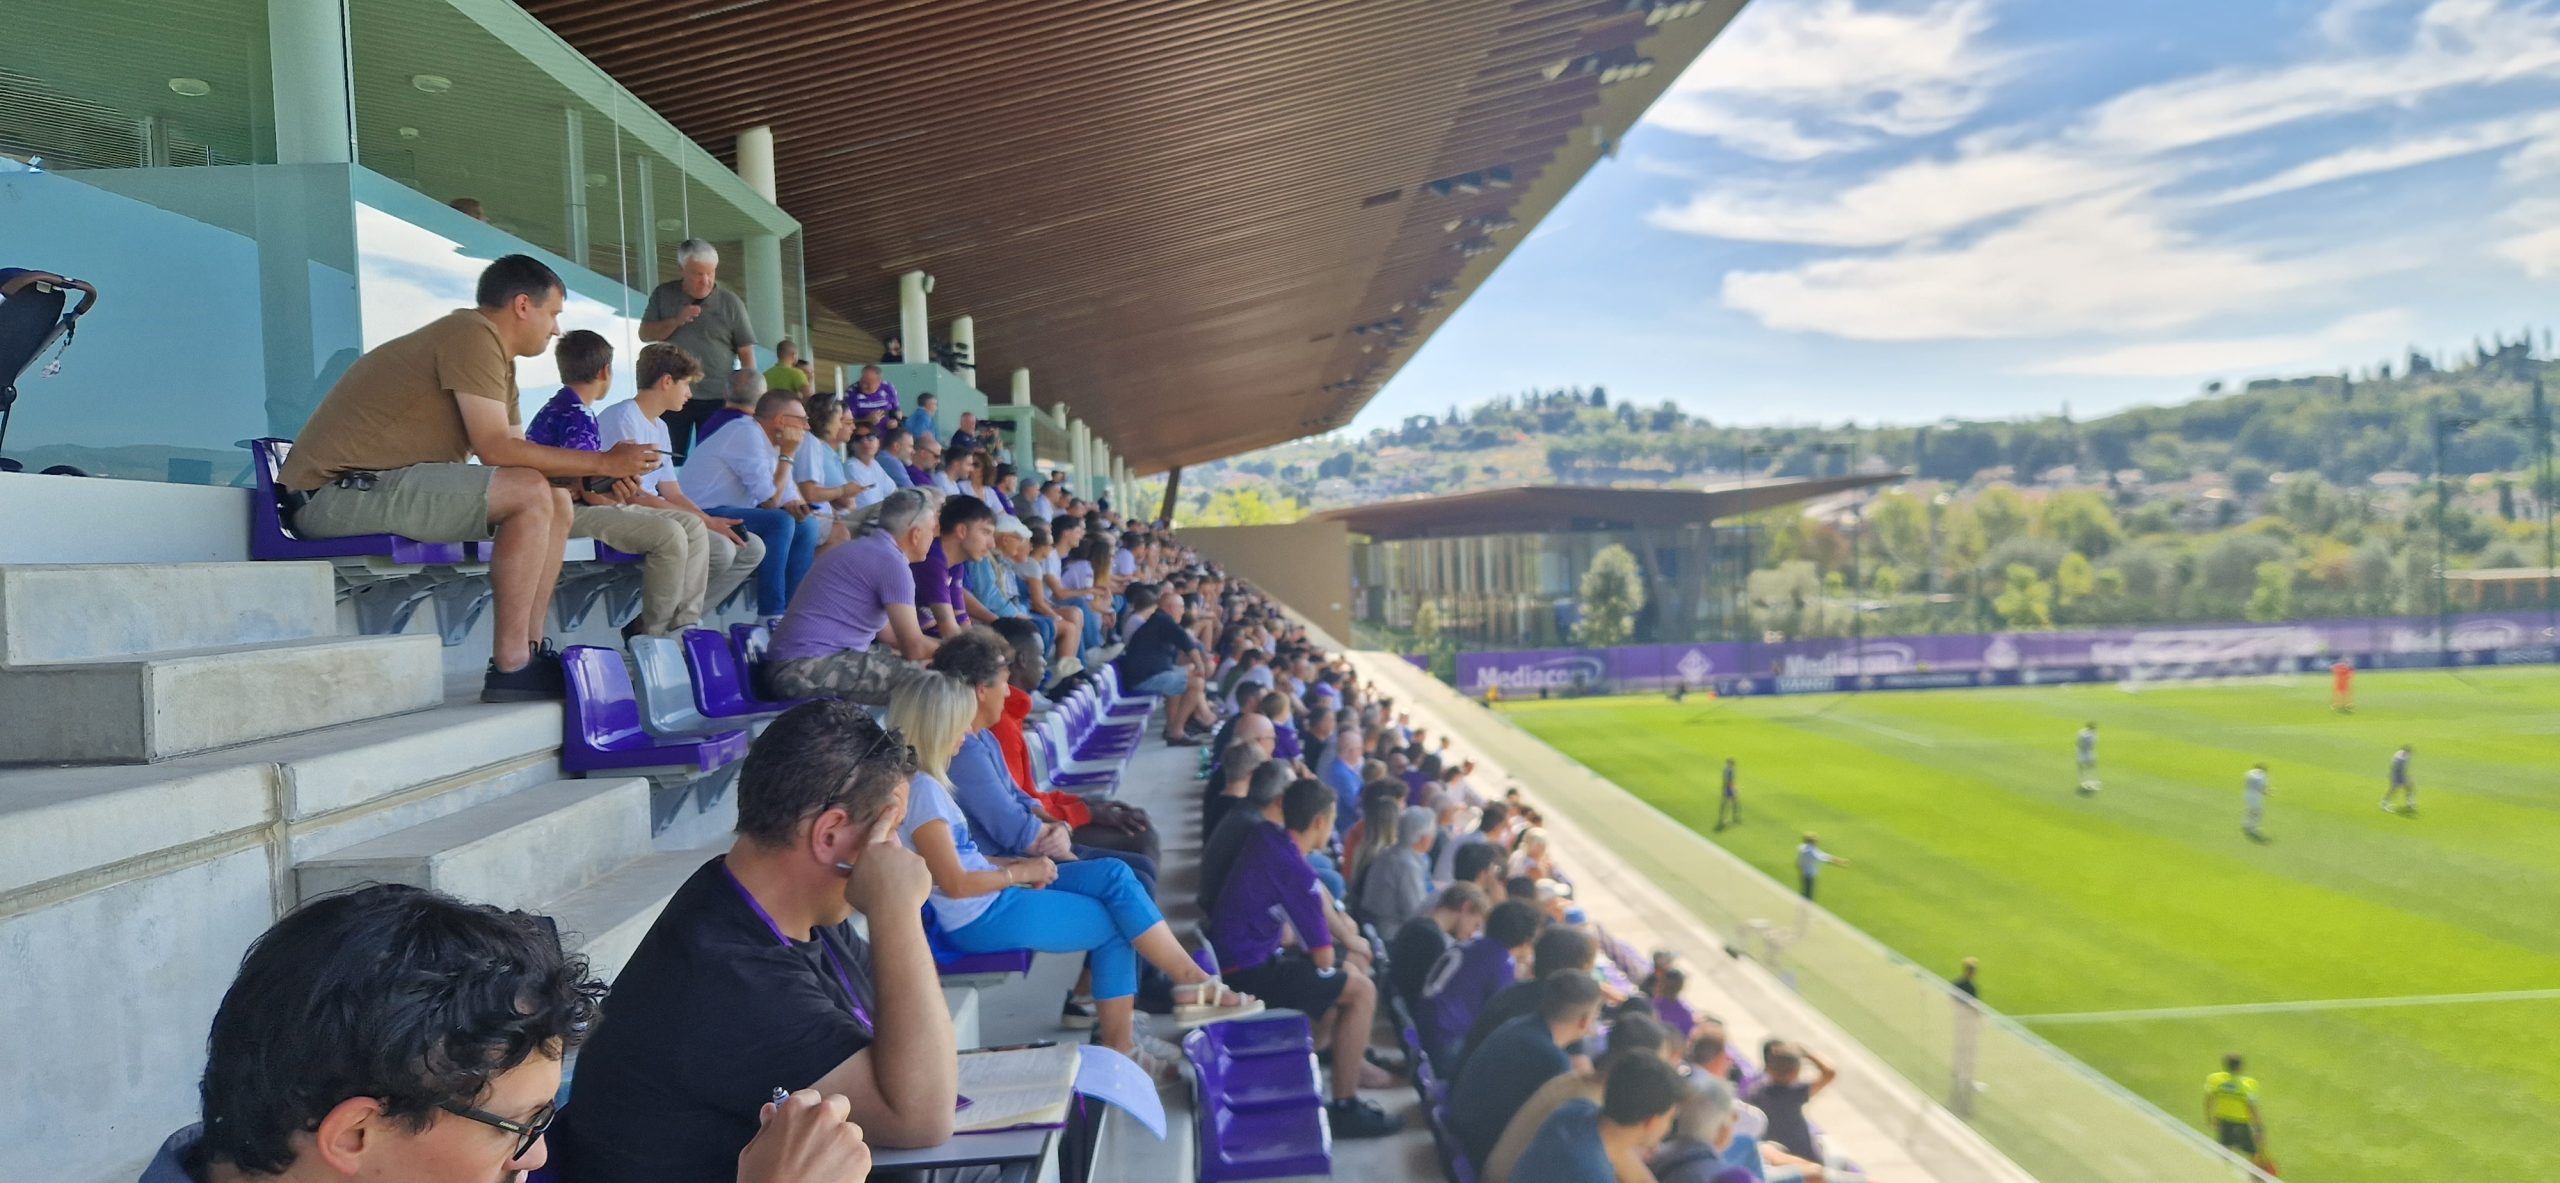 Il Viola Park ospita per la prima volta una partita delle gigliate: Fiorentina-Napoli Femminile si gioca al “Curva Fiesole”